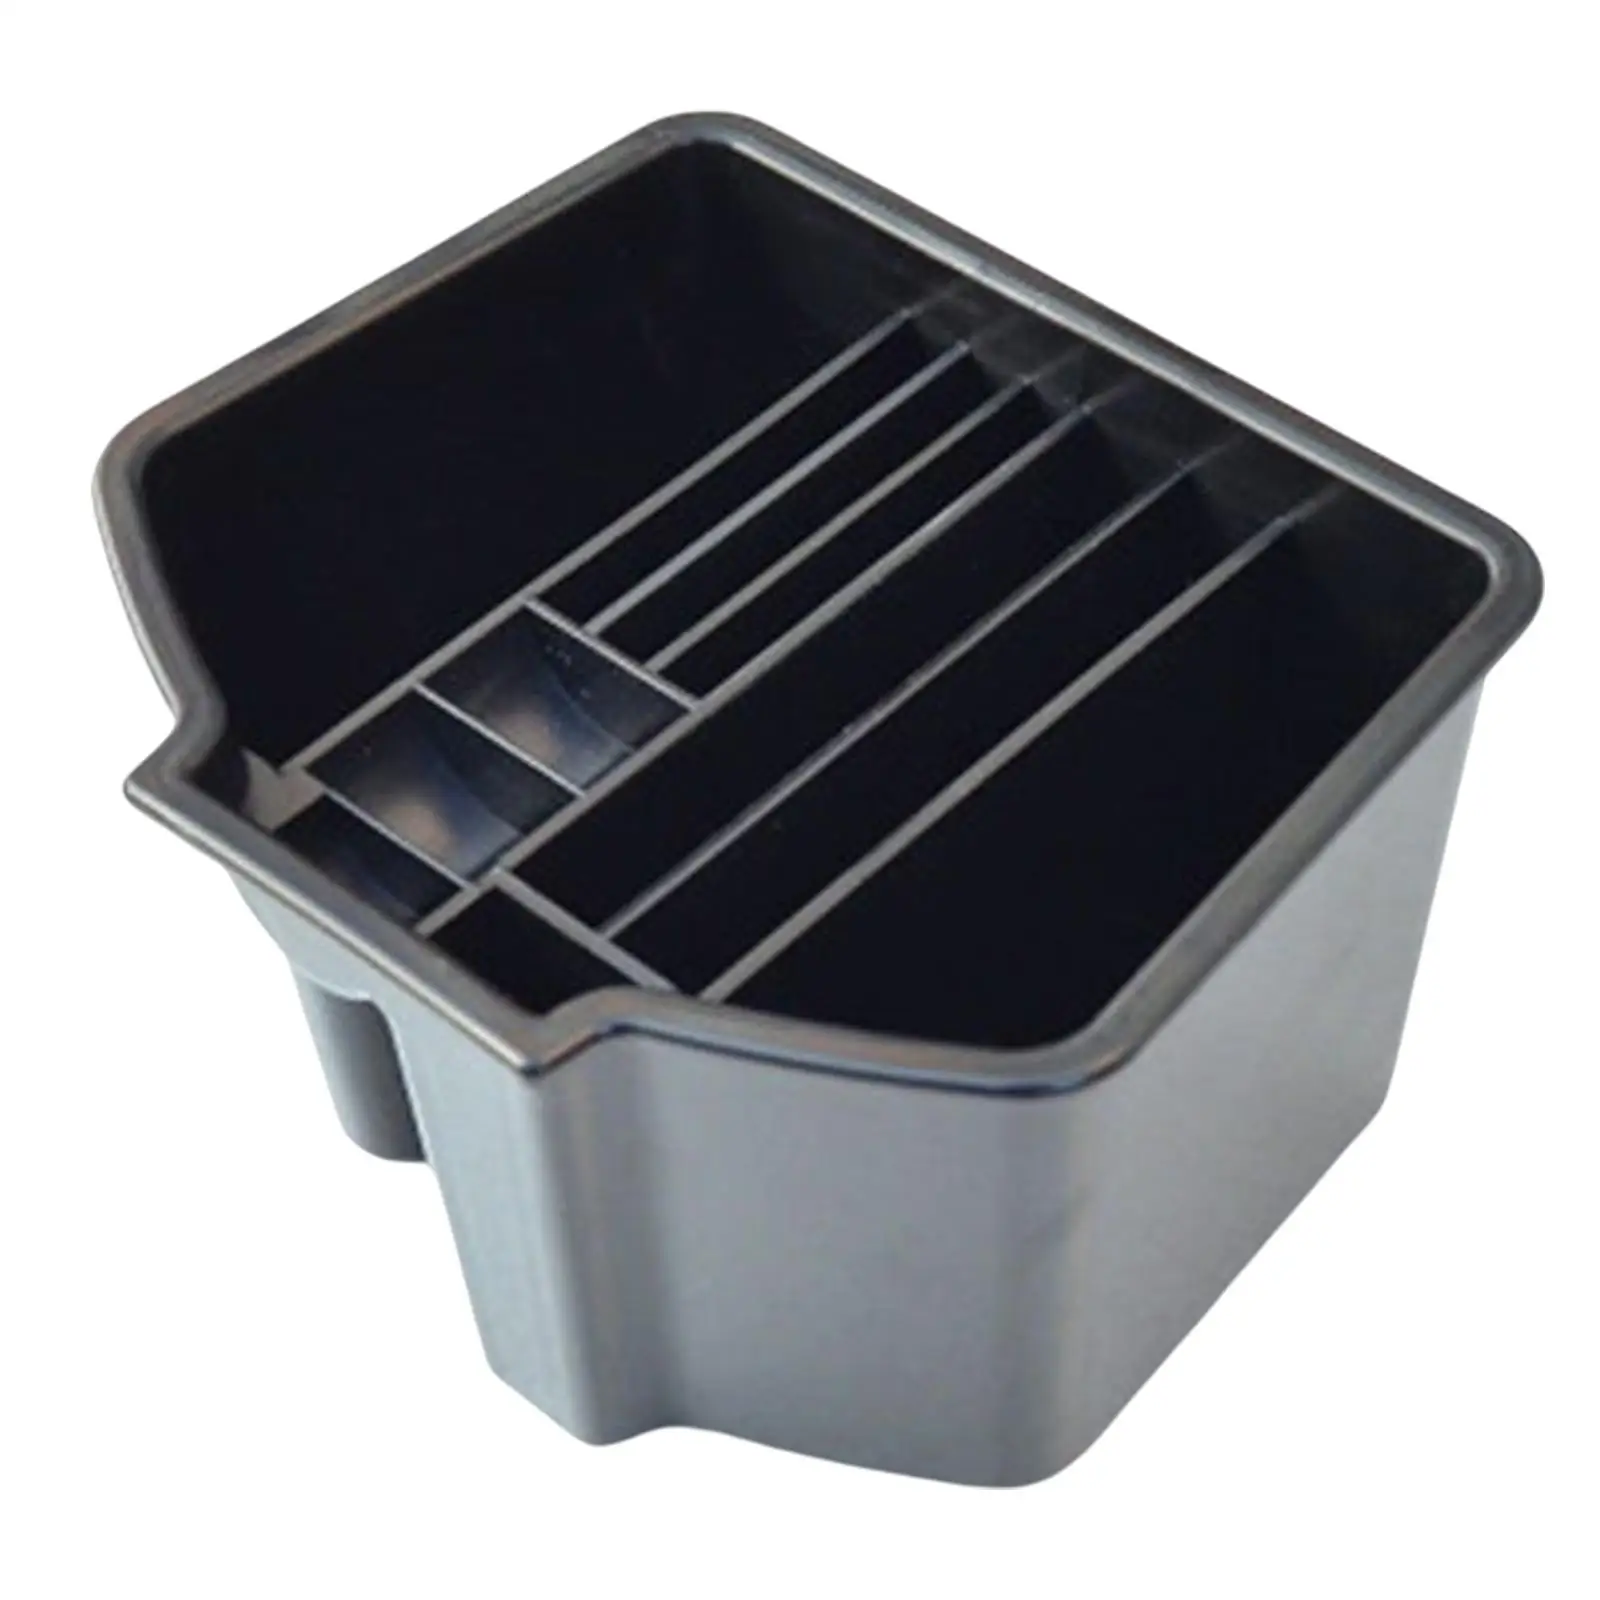 Automobile Console Organizer Storage Box for Honda Civic 10TH Premium Material Non Slip Easy Installation Accessories